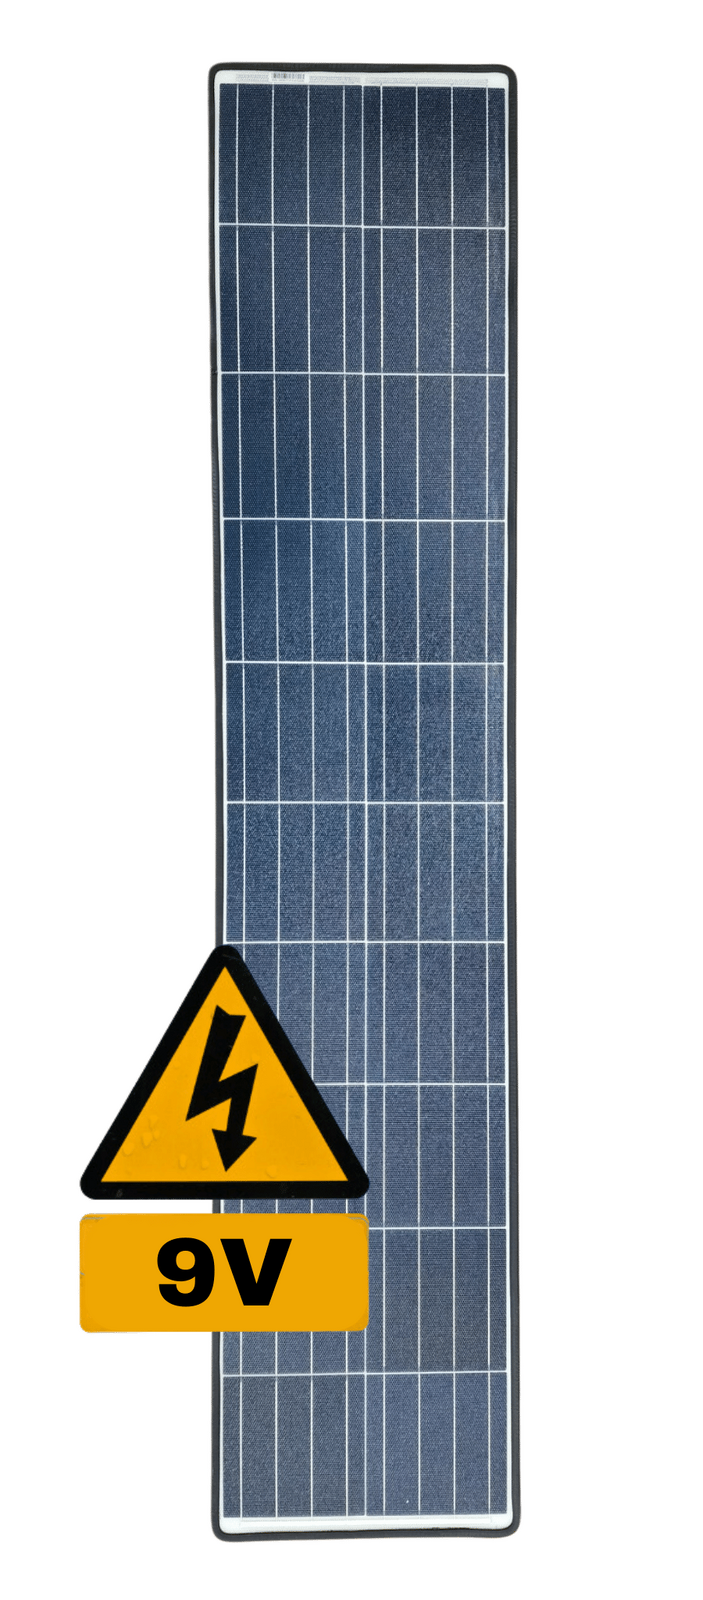 9V eArc 85W Flexible Solar Panel - EPDM Rubber Edge Junction Box